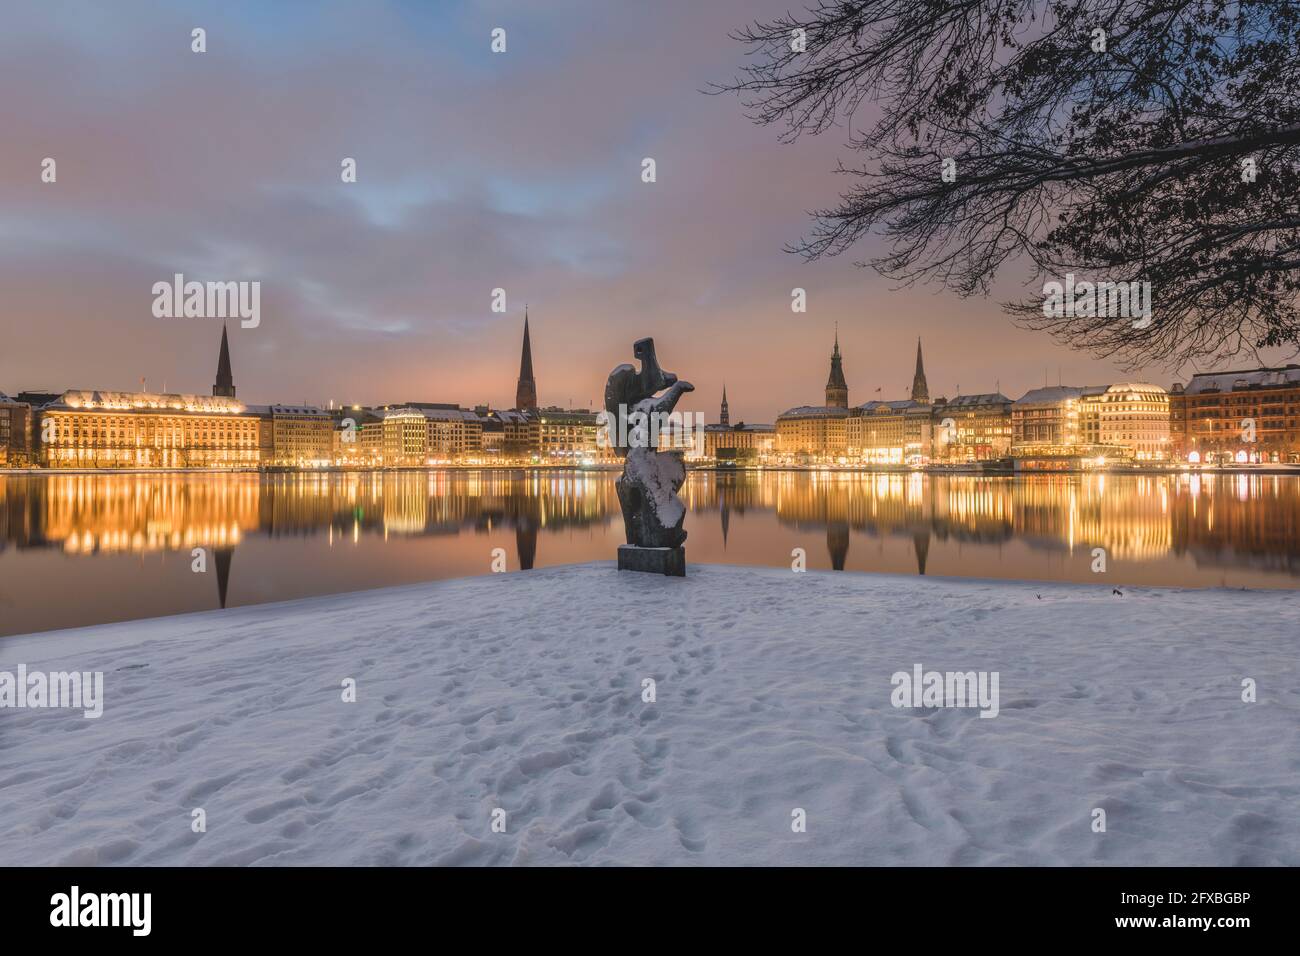 Germania, Amburgo, architettura cittadina illuminata che si riflette nel lago di Binnenalster al tramonto d'inverno Foto Stock